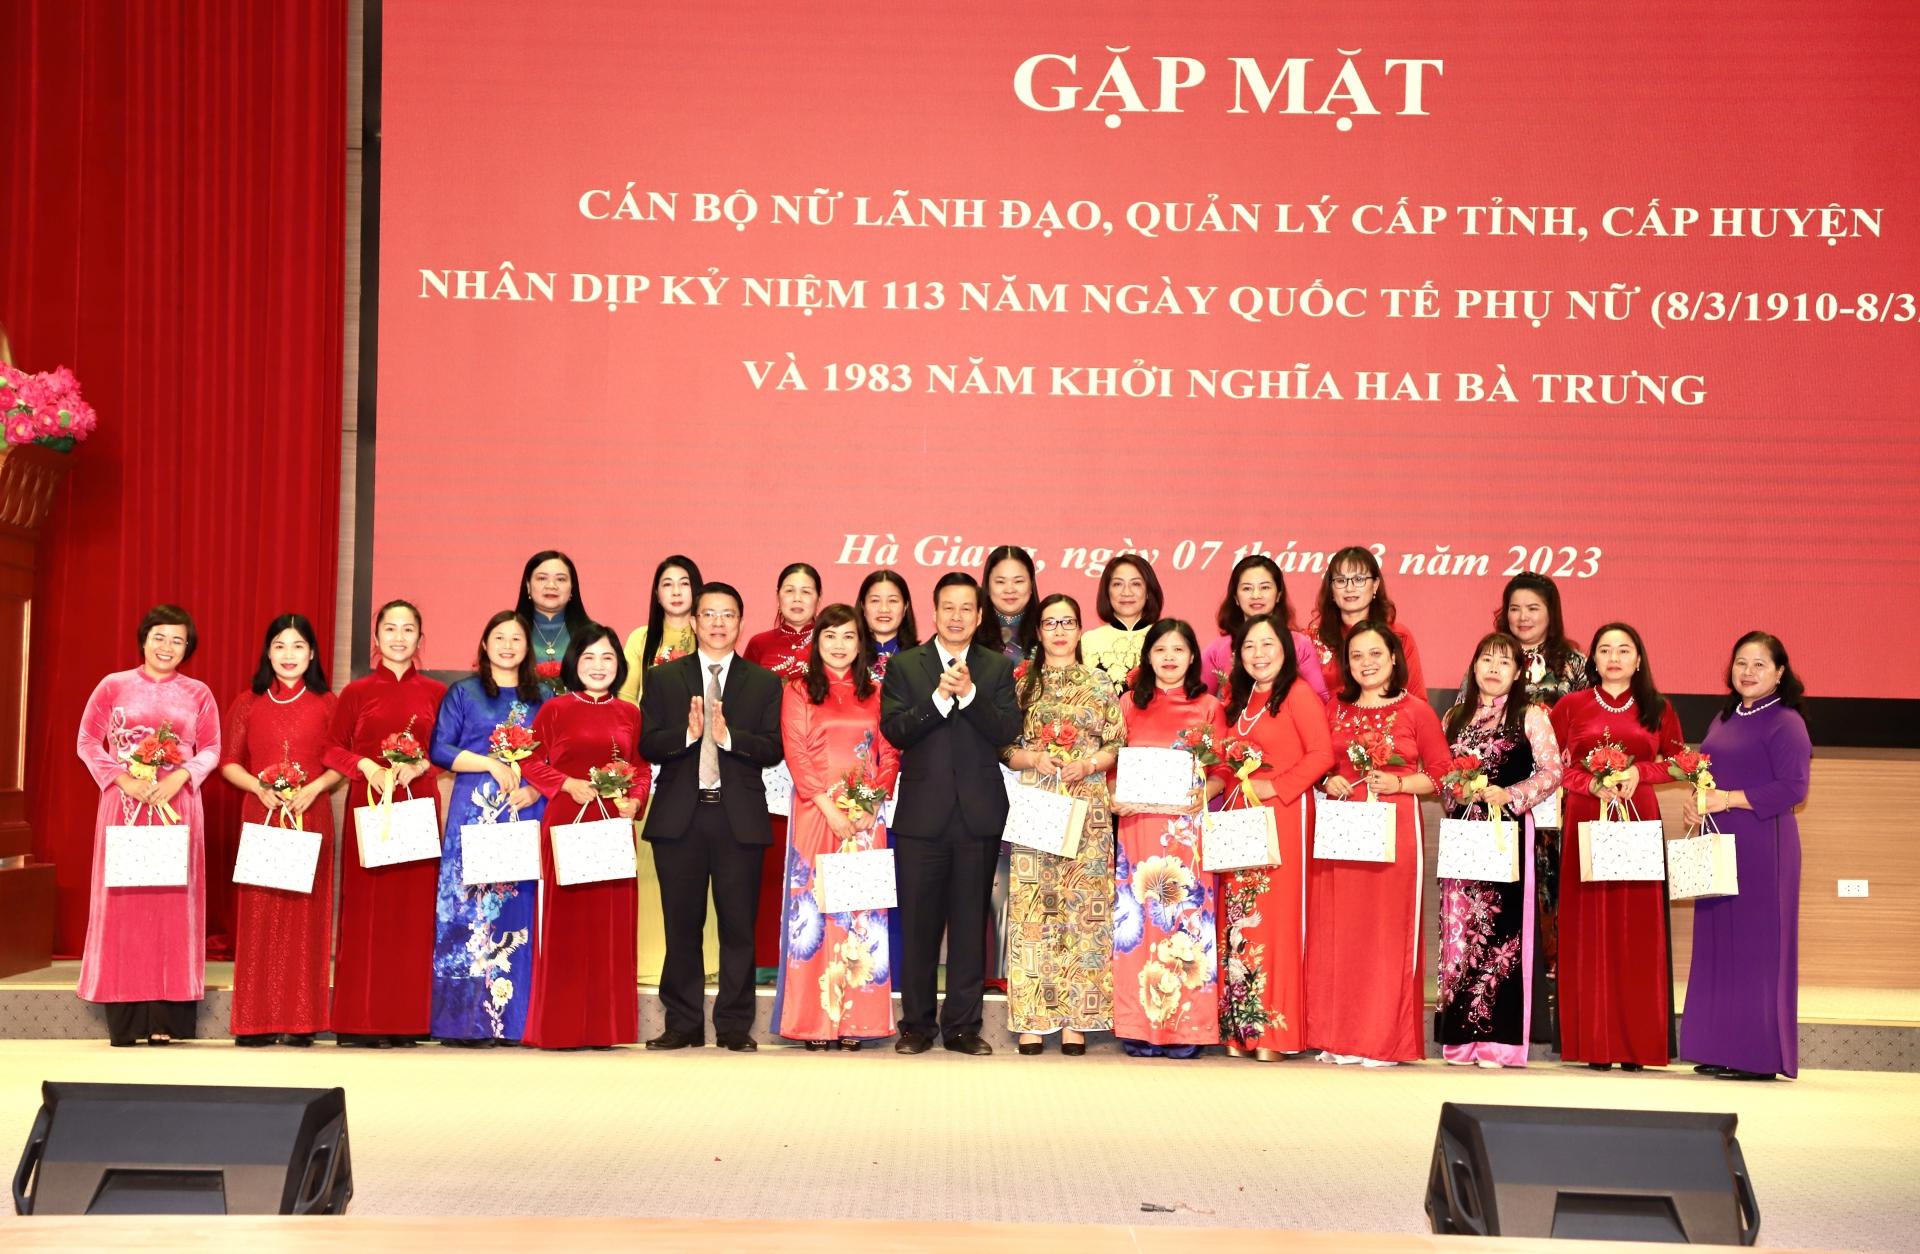 Chủ tịch UBND tỉnh Nguyễn Văn Sơn và Trưởng ban Dân vận Tỉnh ủy Trần Mạnh Lợi tặng hoa và quà chúc mừng các đồng chí cán bộ nữ lãnh đạo, quản lý cấp huyện